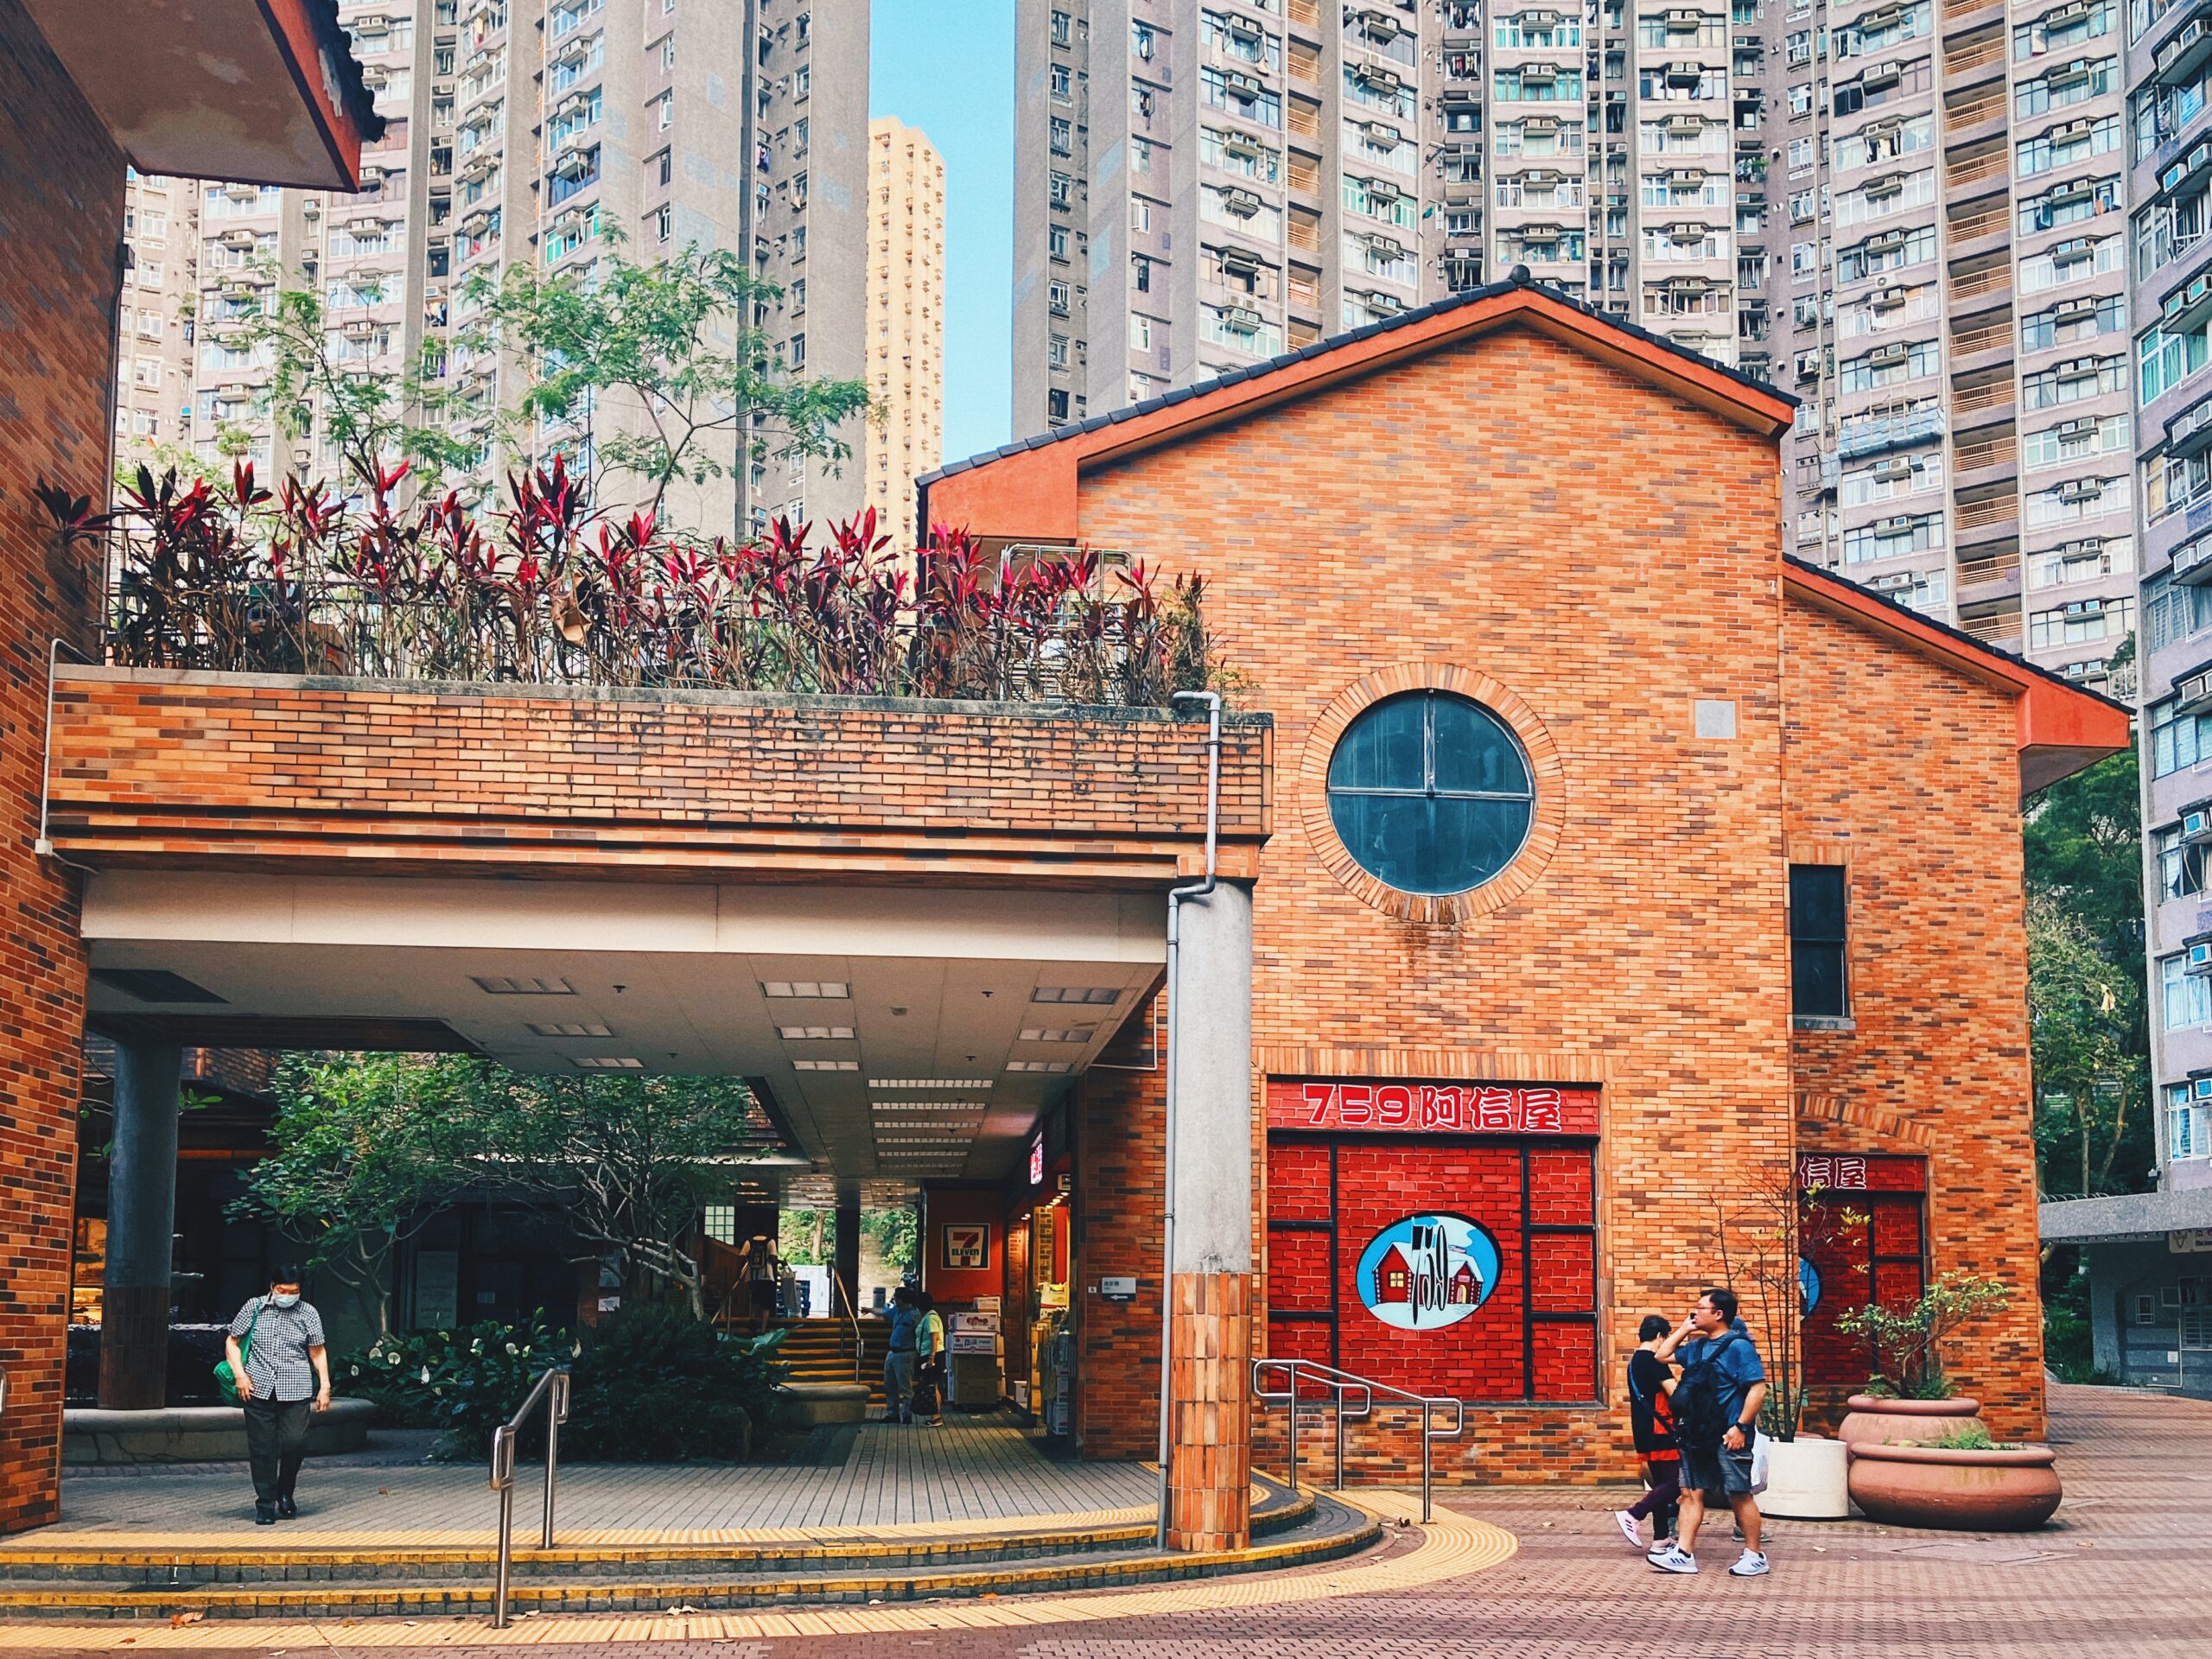 【香港公屋】沙田廣源邨 特有傳統英式建築風情屋邨